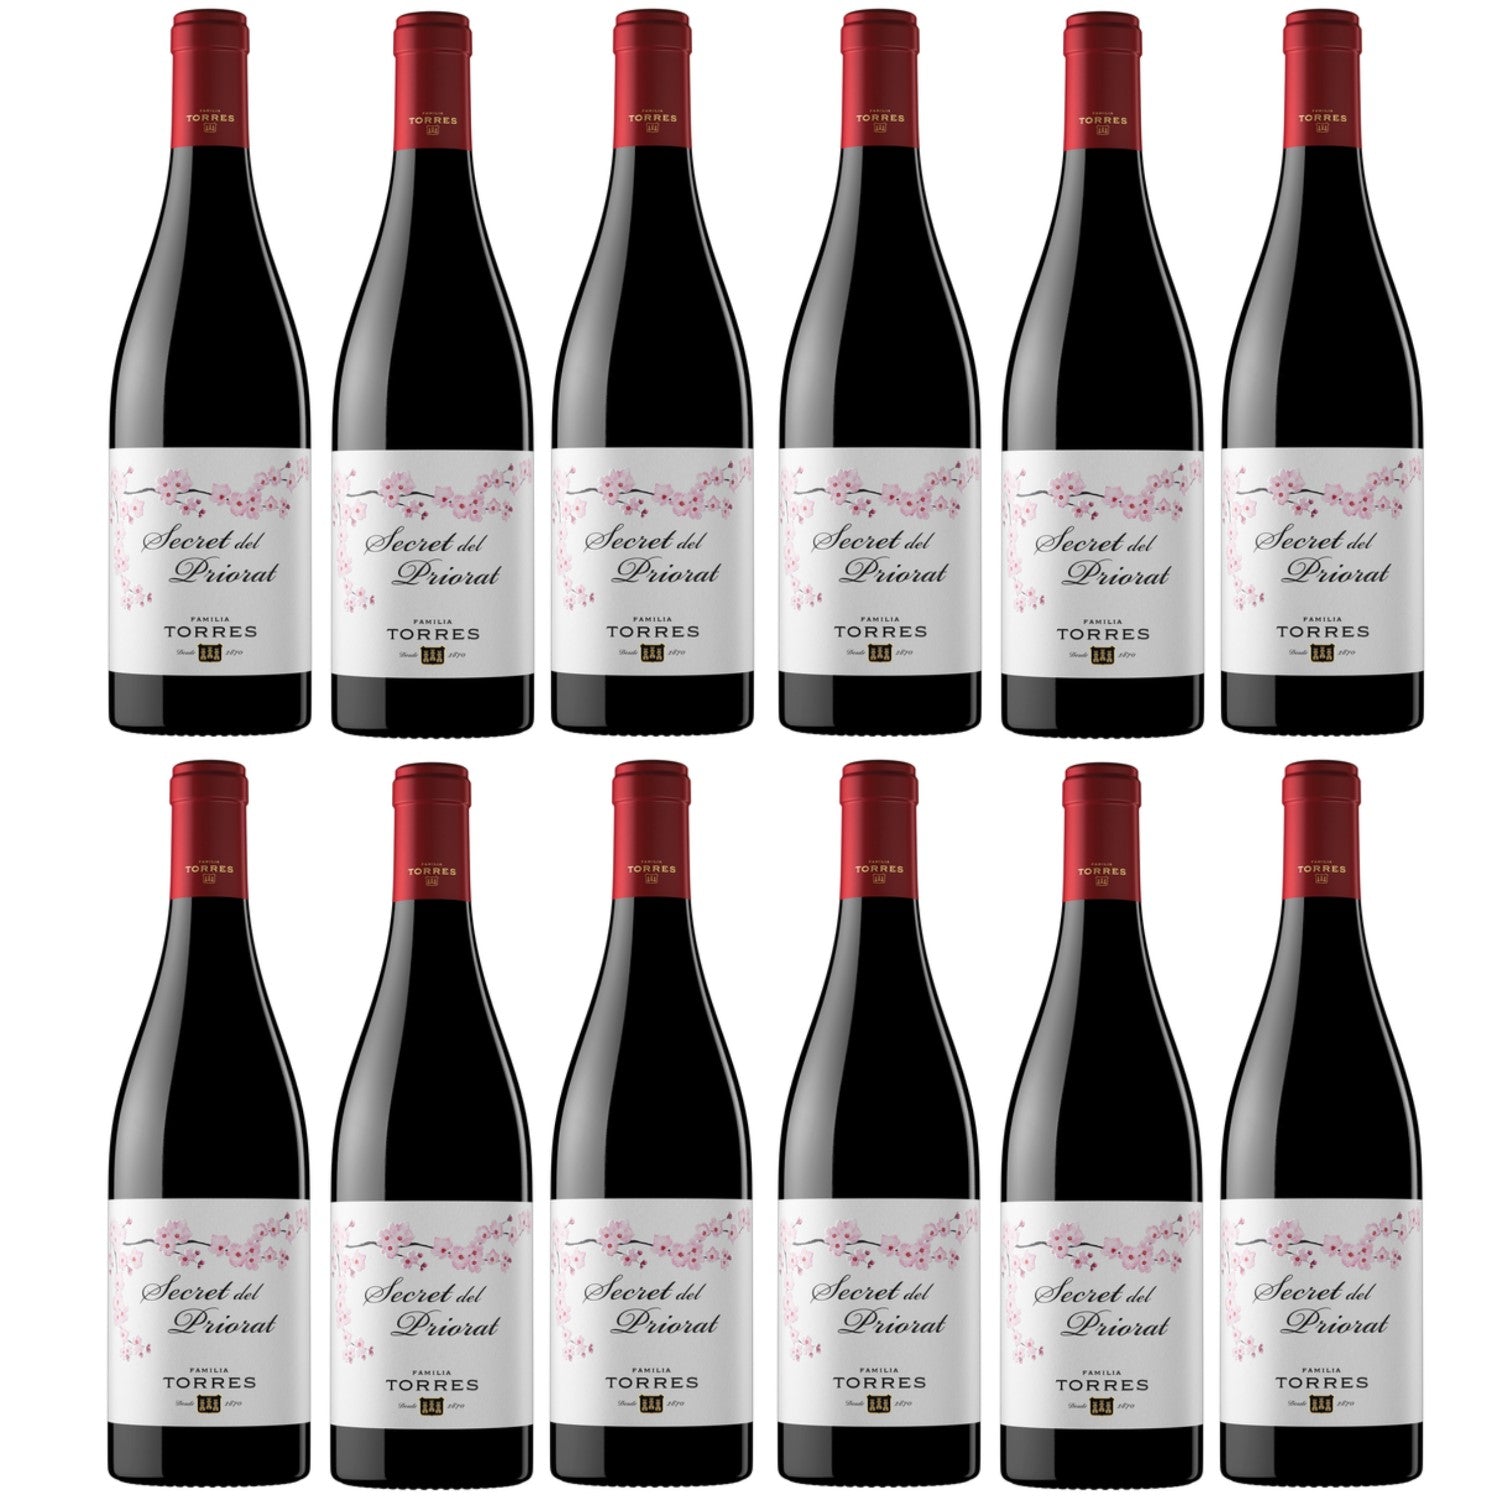 Miguel Torres Secret del Priorat Rotwein Wein Halbtrocken Spanien (12 x 0.75l) - Versanel -